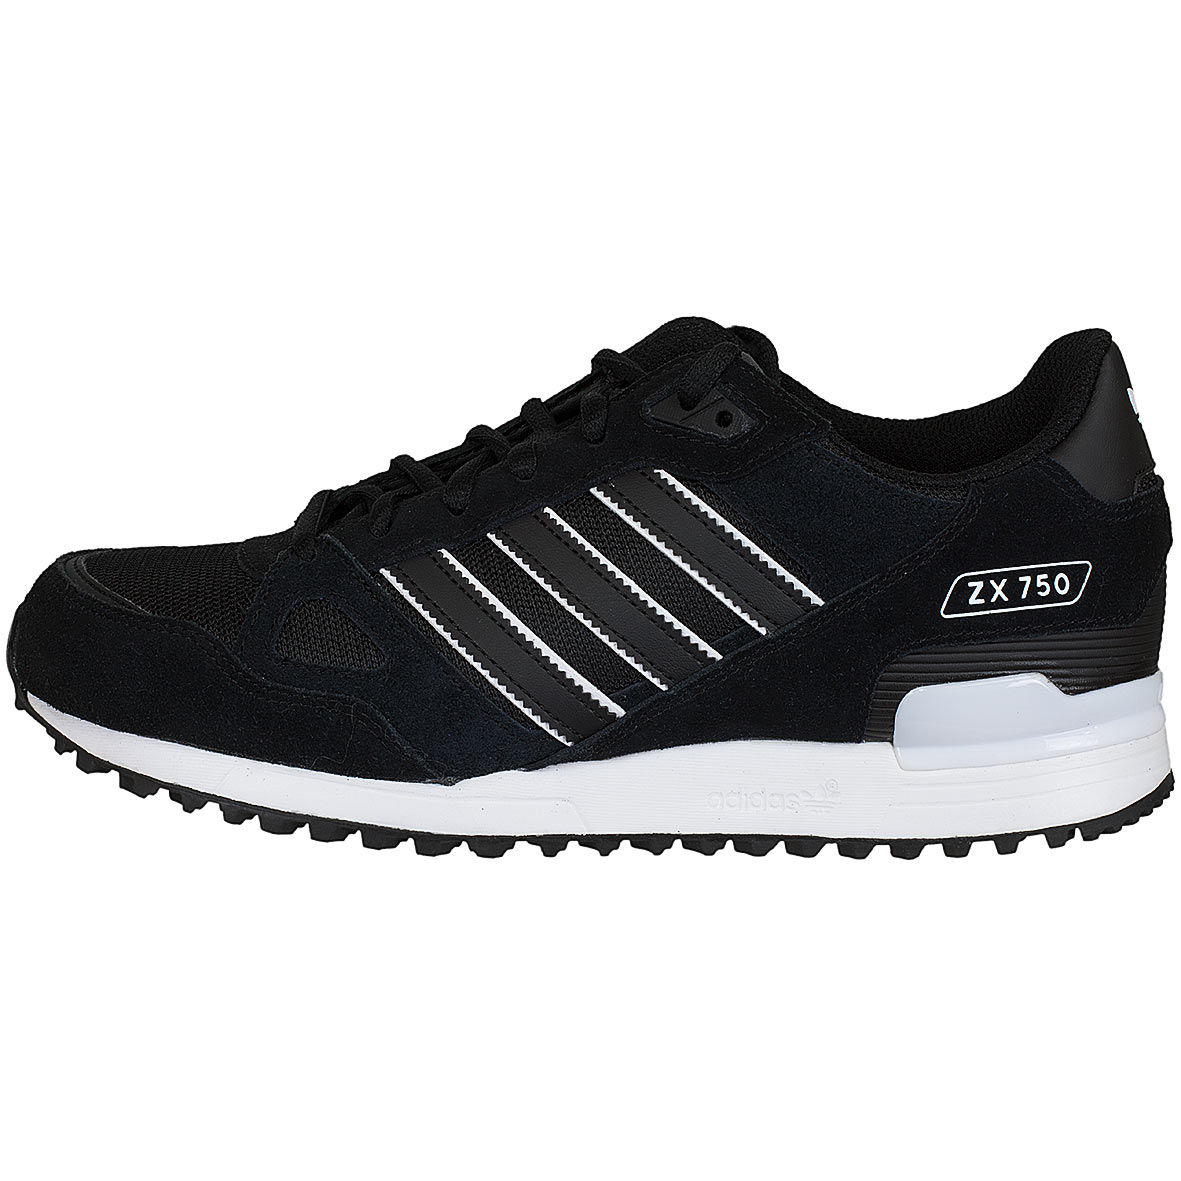 ☆ Adidas Originals Sneaker ZX 750 schwarz/weiß - hier bestellen!